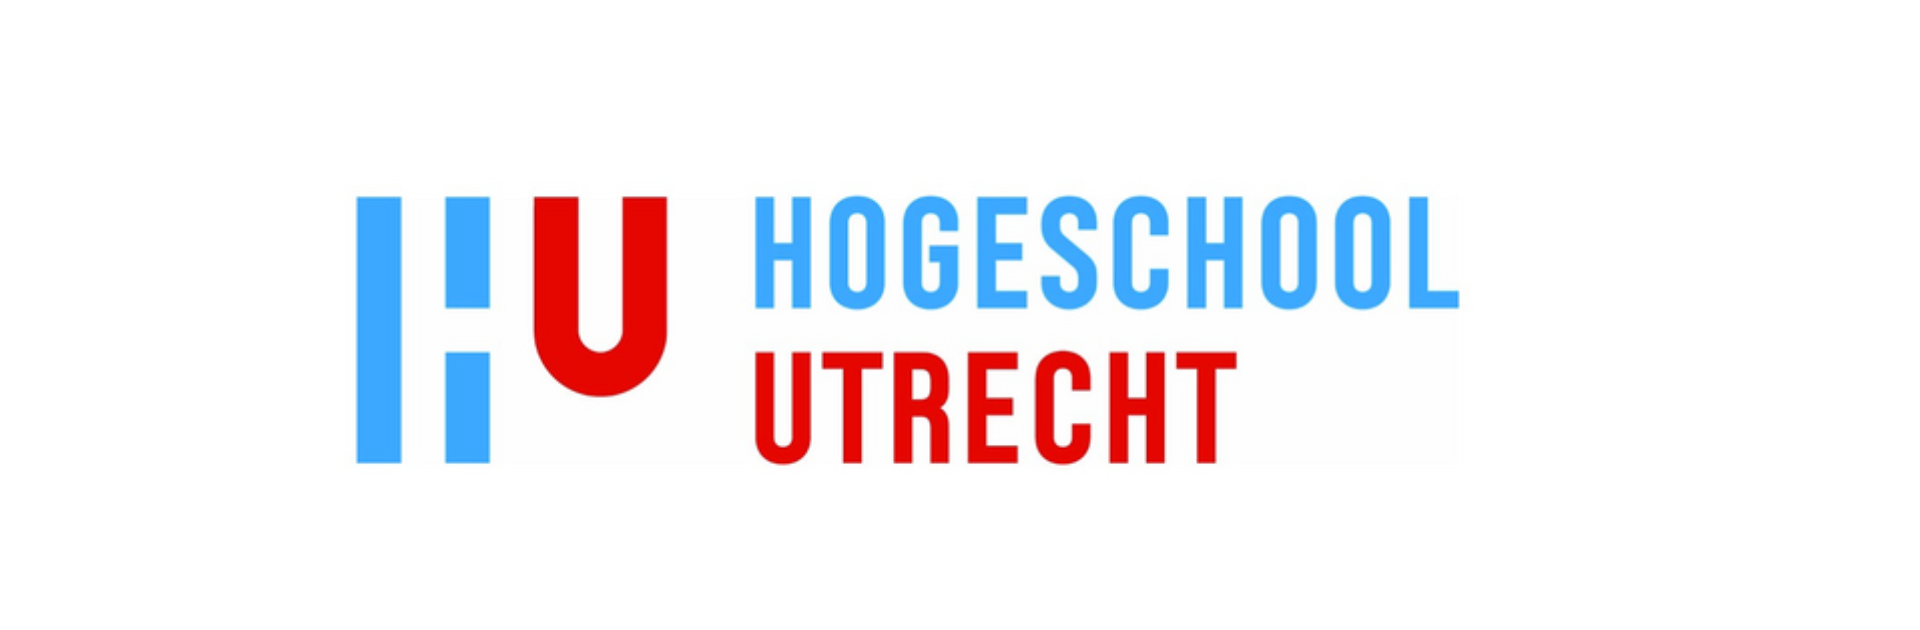 Utrecht University of Applied Sciences